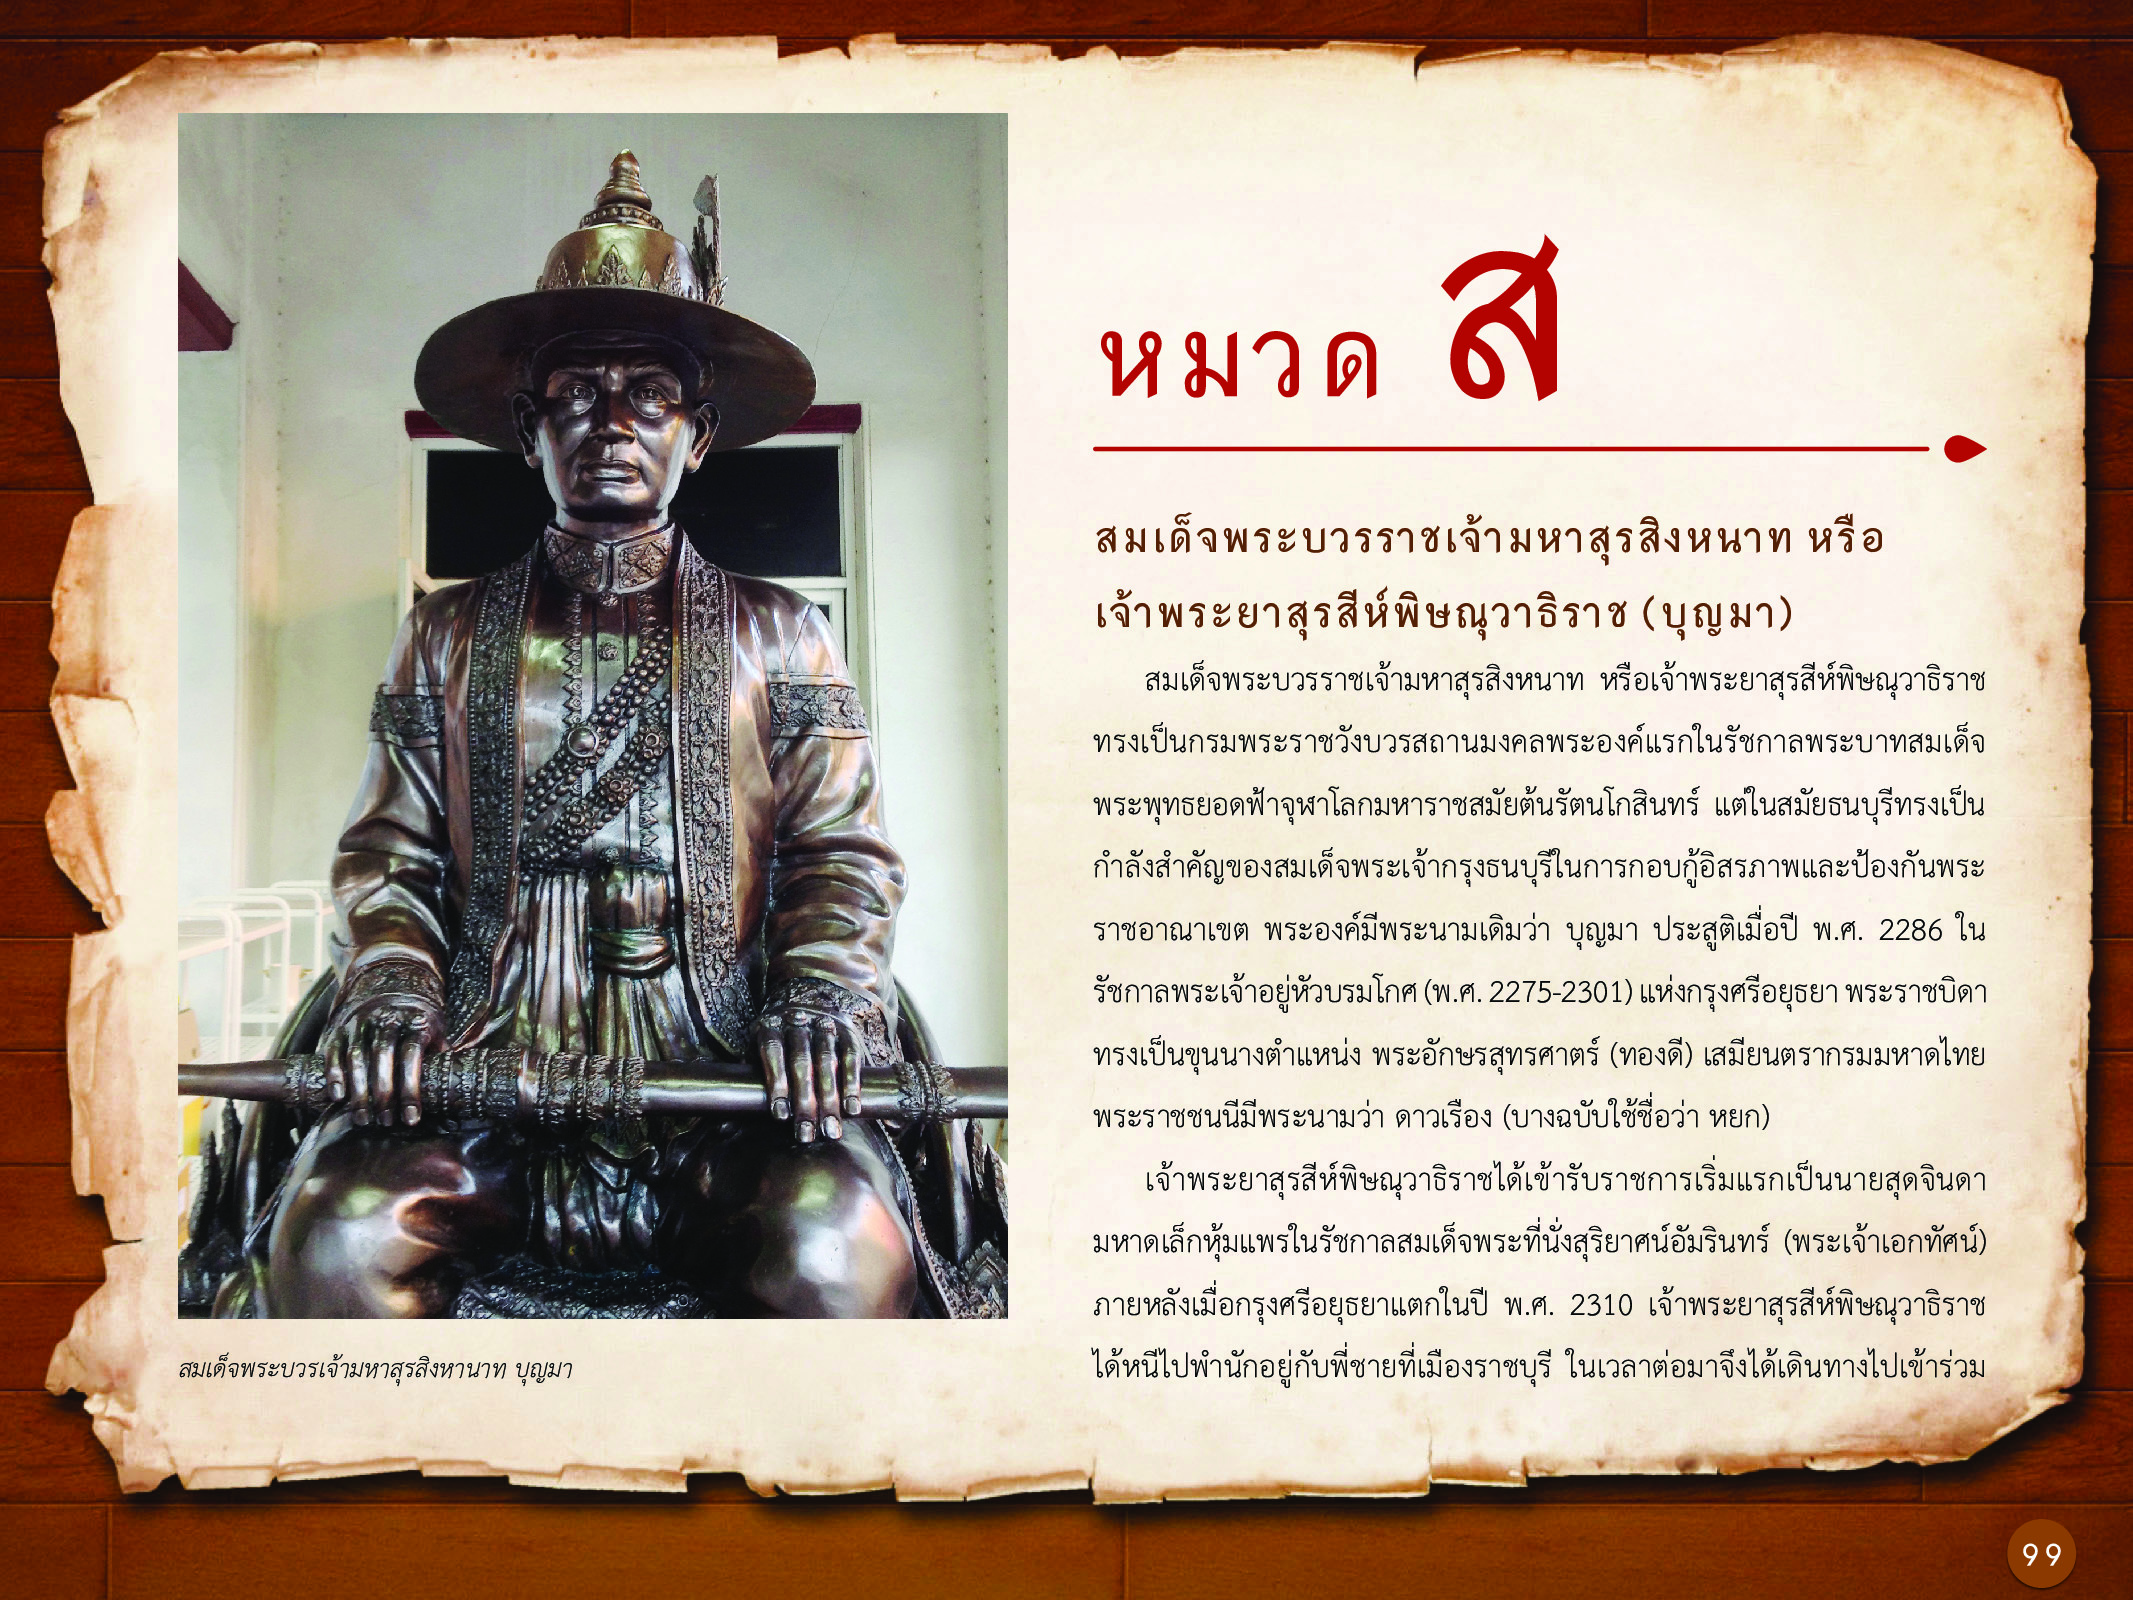 ประวัติศาสตร์กรุงธนบุรี ./images/history_dhonburi/99.jpg